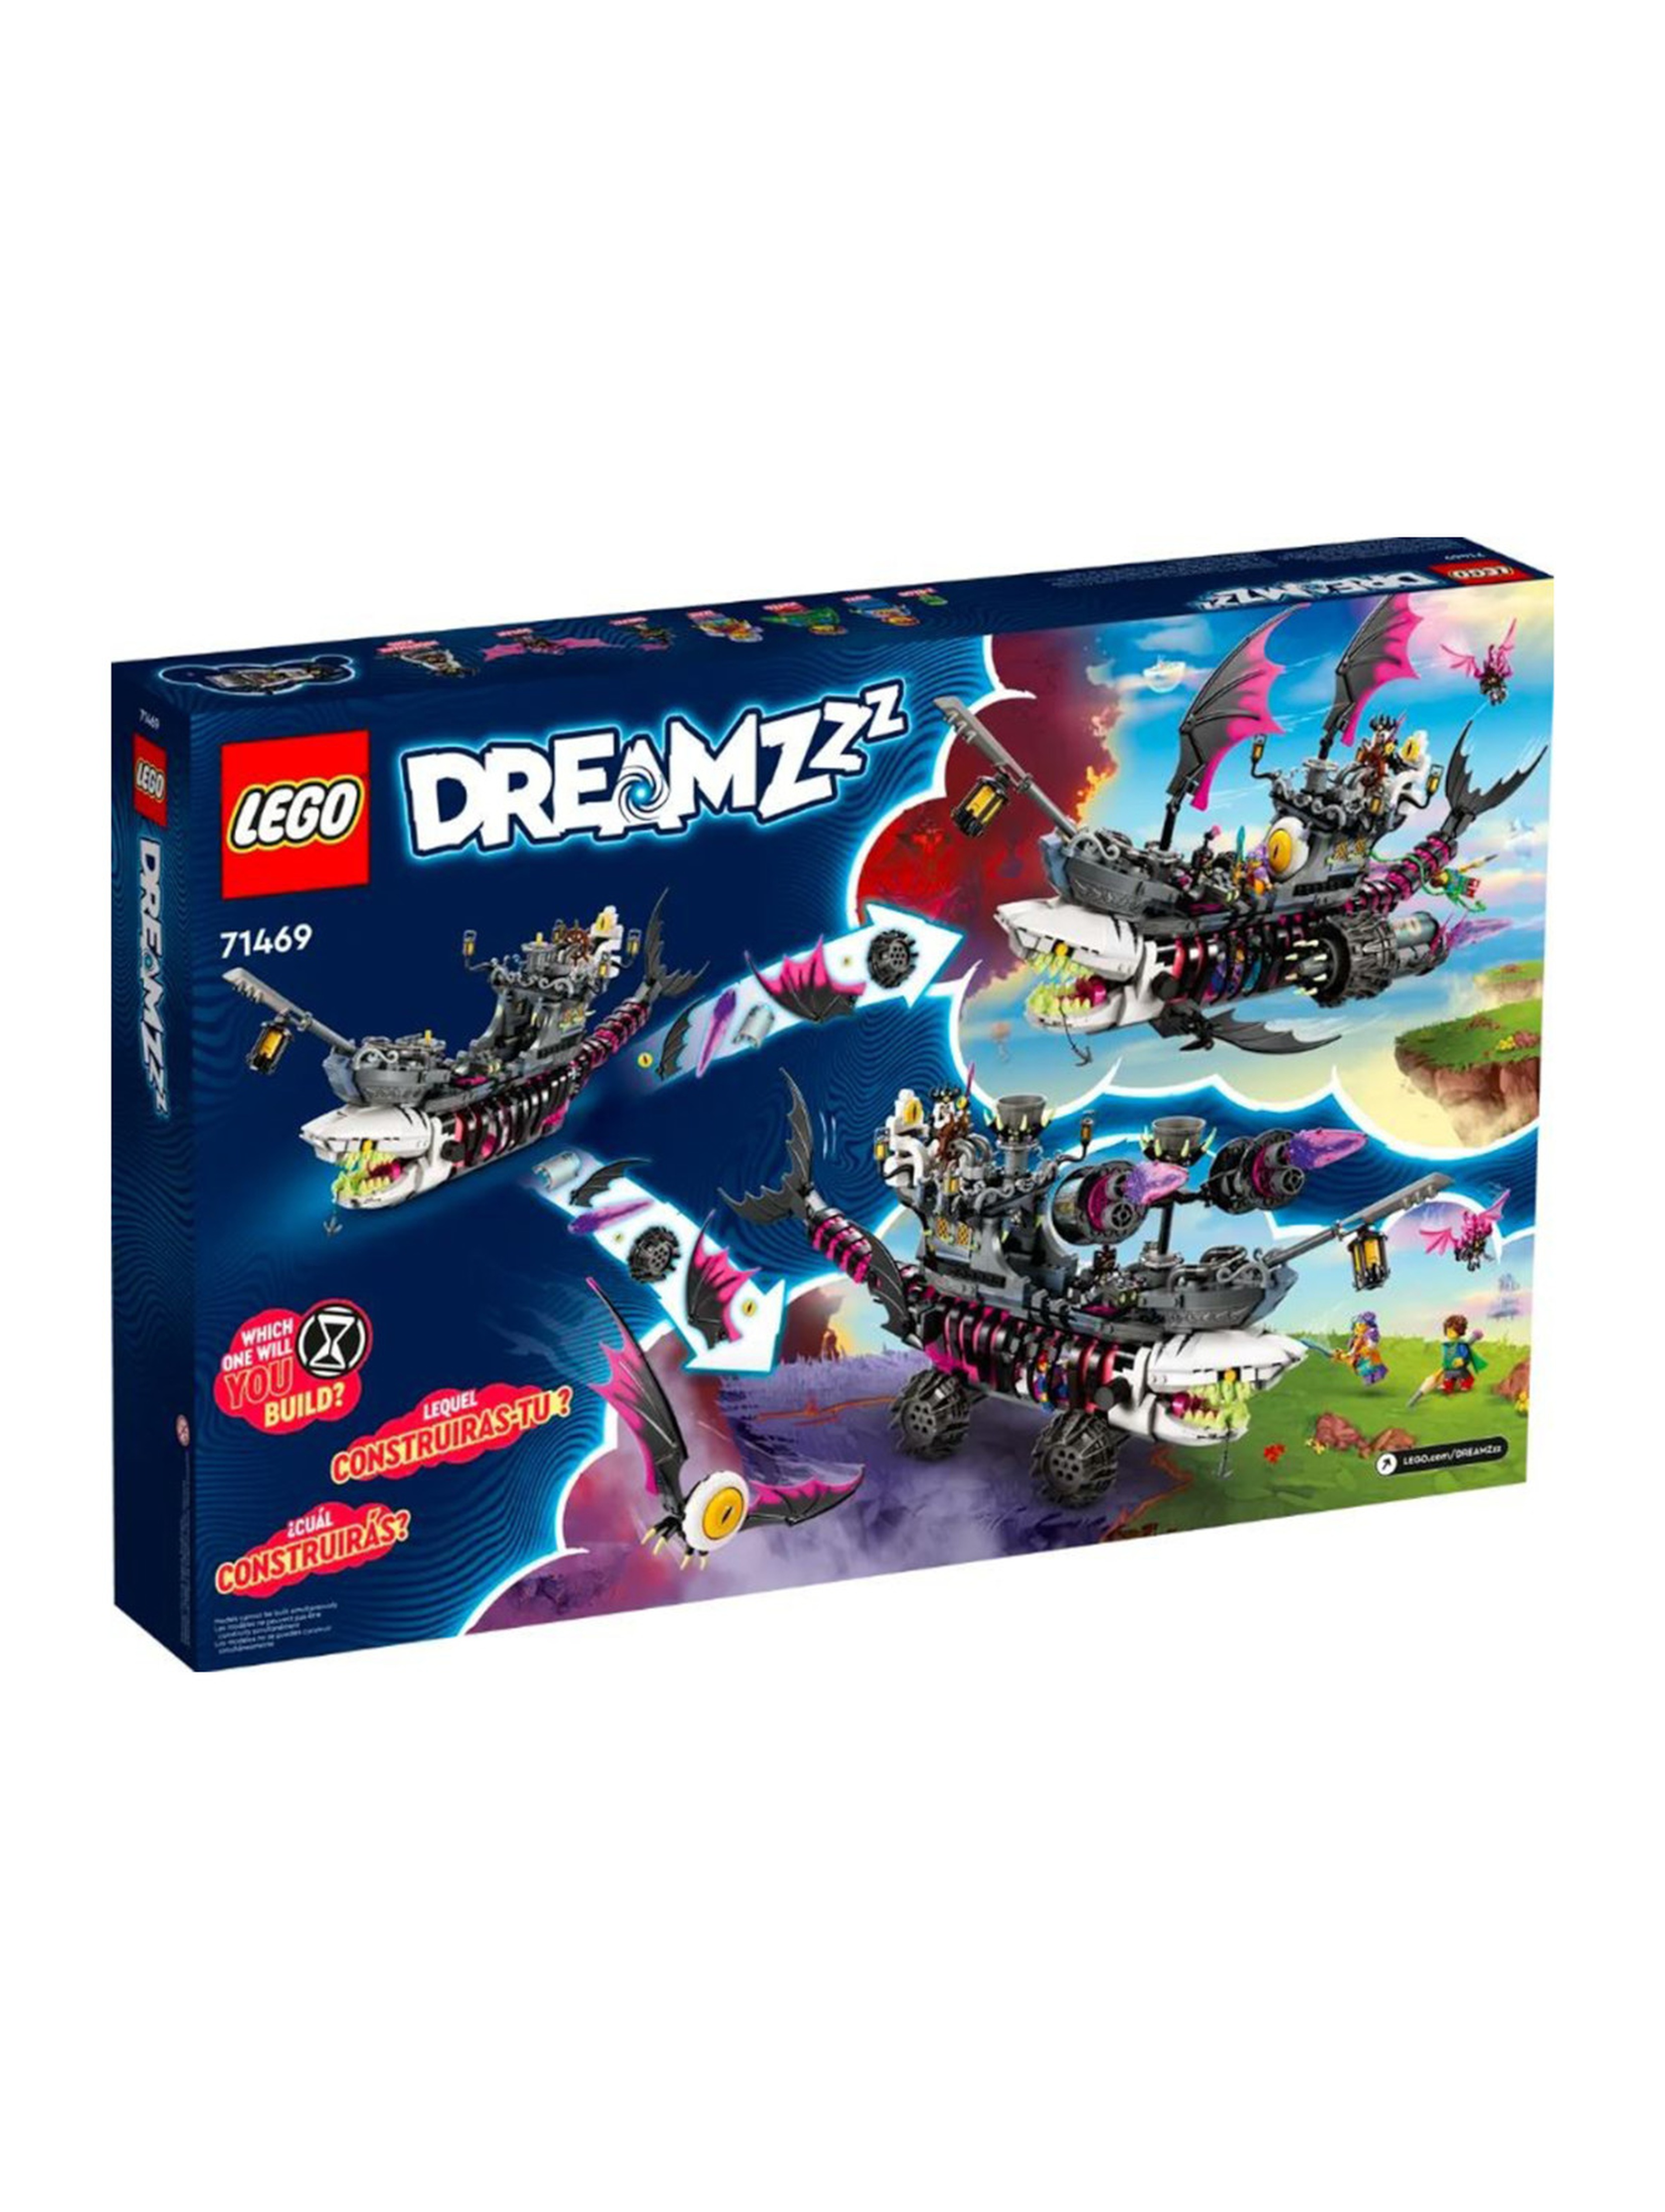 Klocki LEGO DREAMZzz 71469 Statek koszmarnego rekina - 1389 elementów, wiek 10 +